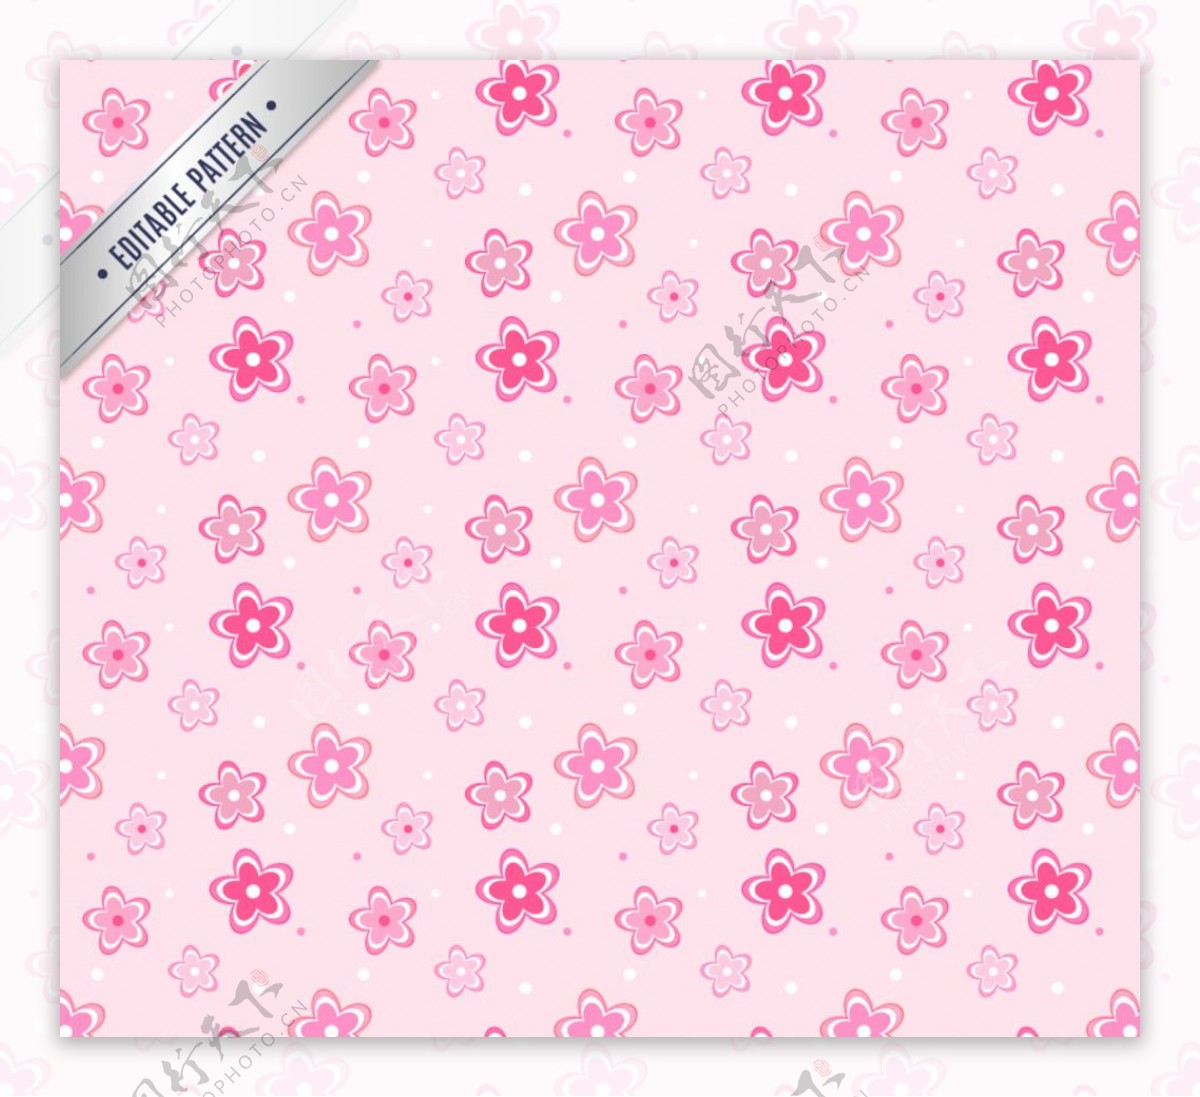 粉色花朵无缝背景设计矢量素材